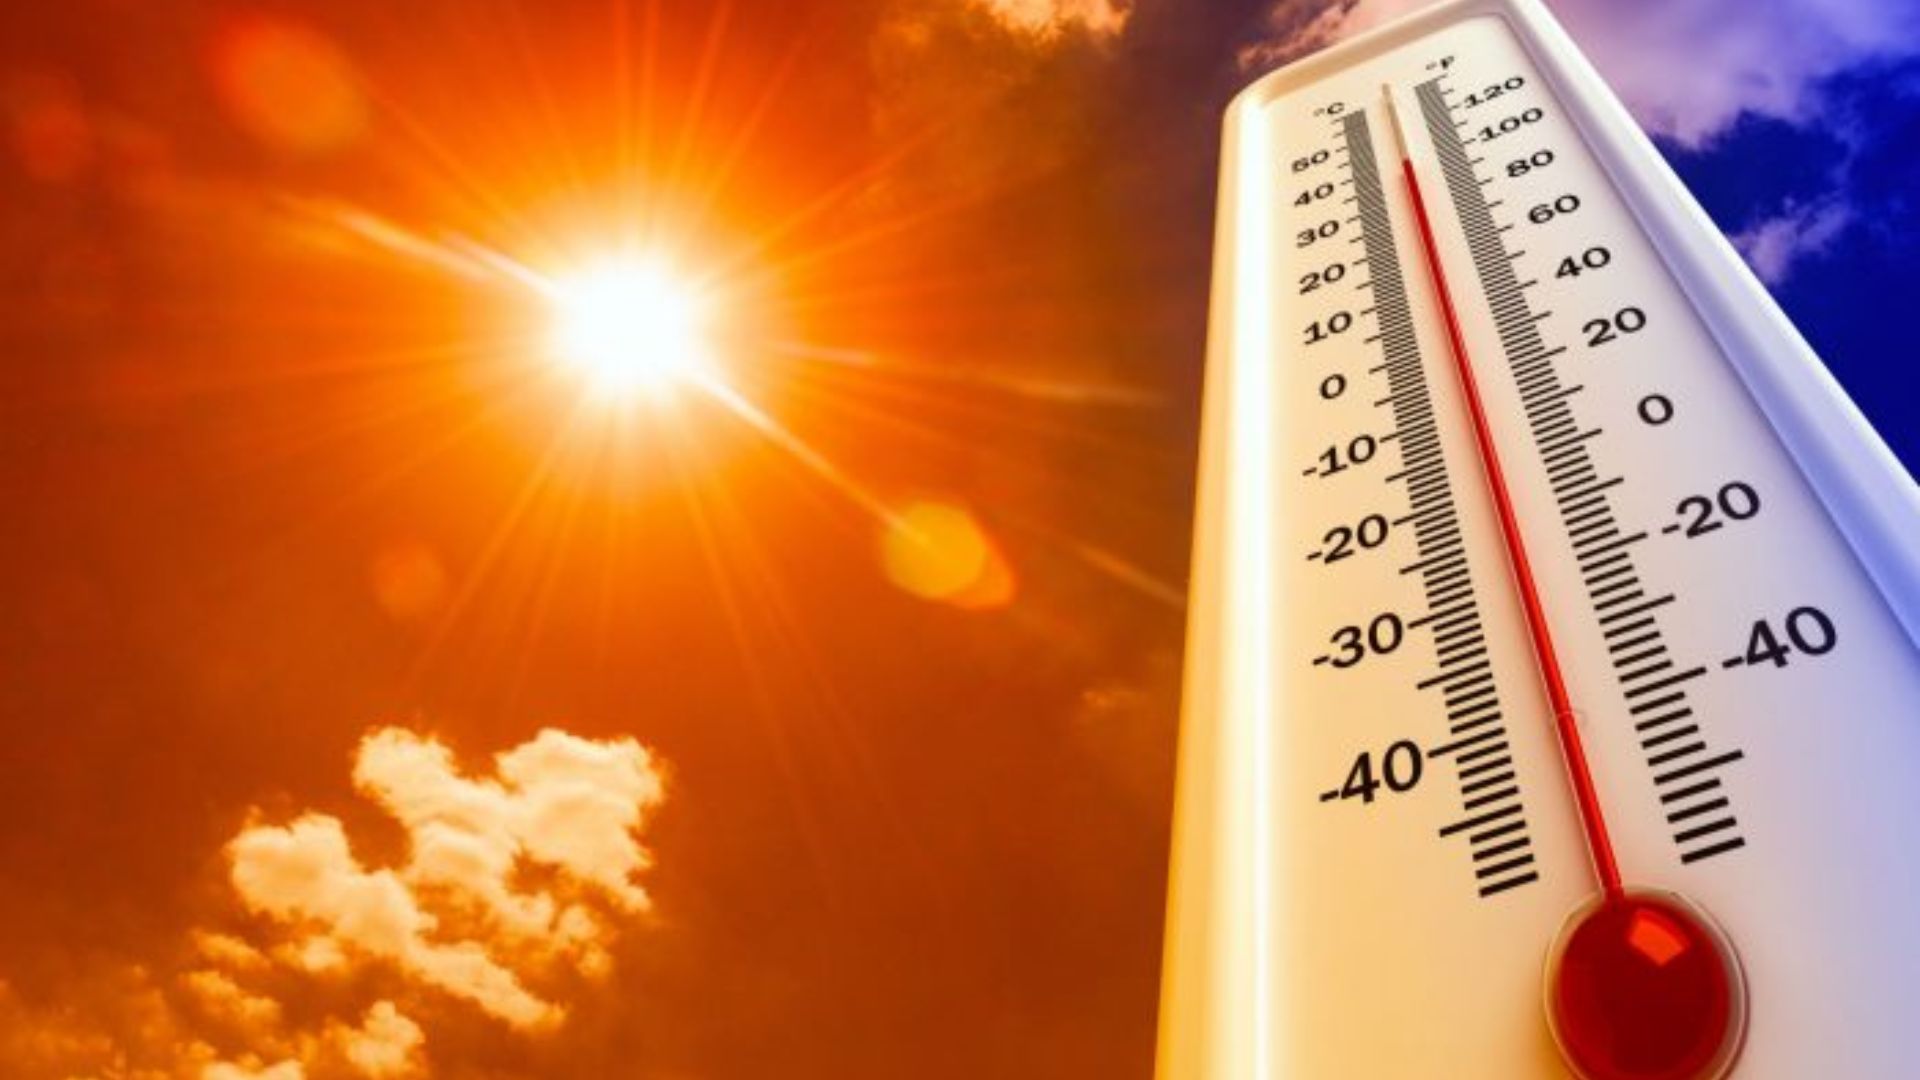 Ola de calor extremo: Temperaturas de hasta 43 grados por "El Niño" y los incendios forestales